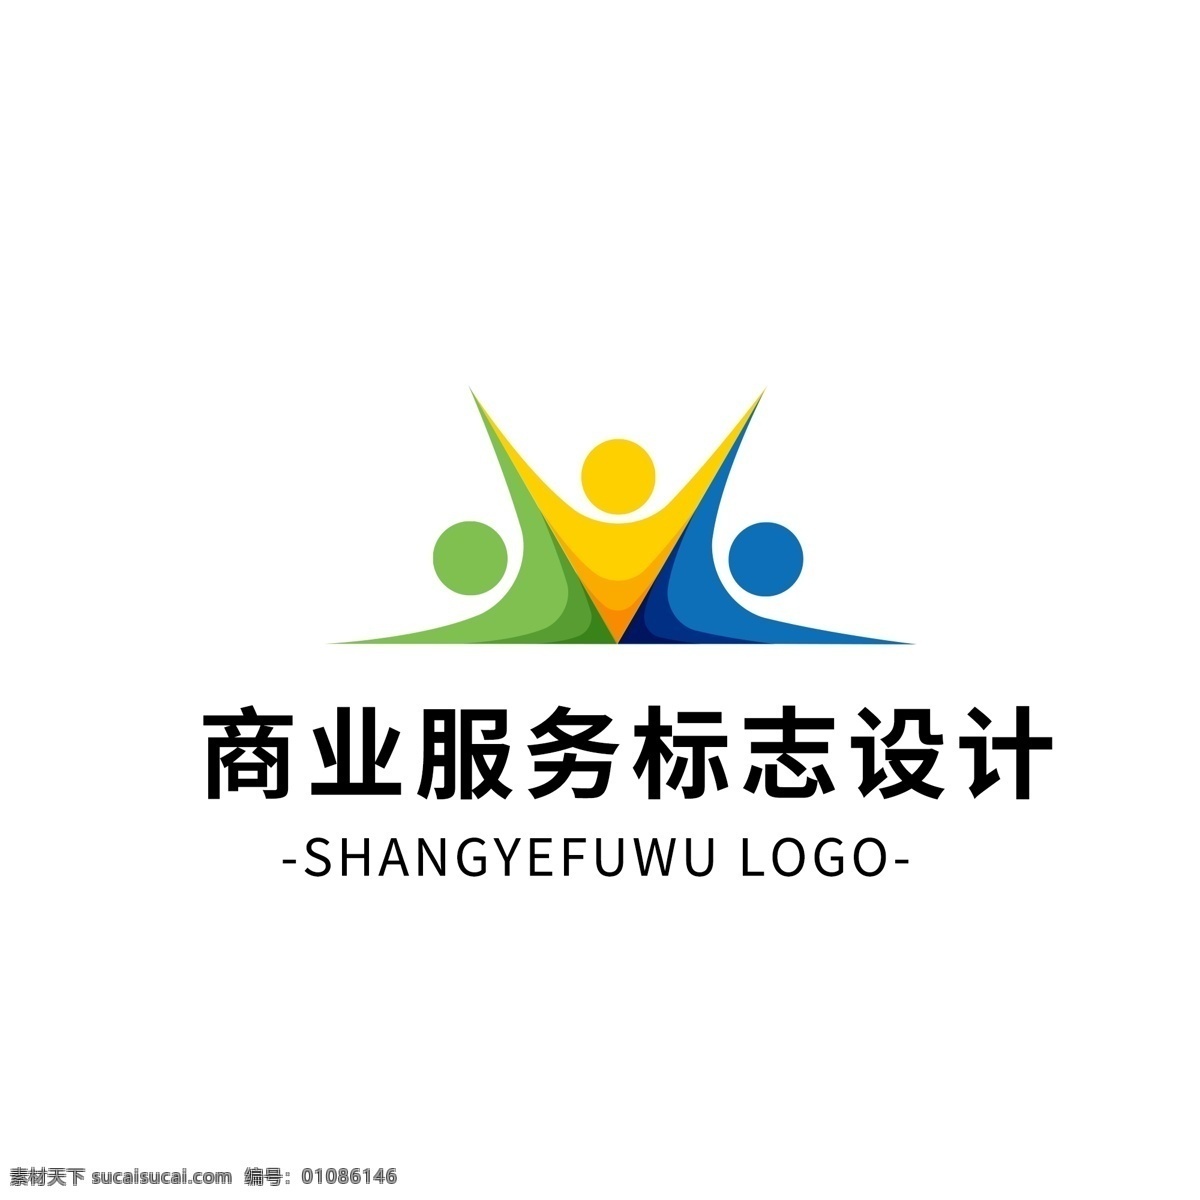 简约 大气 创意 商业服务 logo 标志设计 矢量 图形 服务 商业